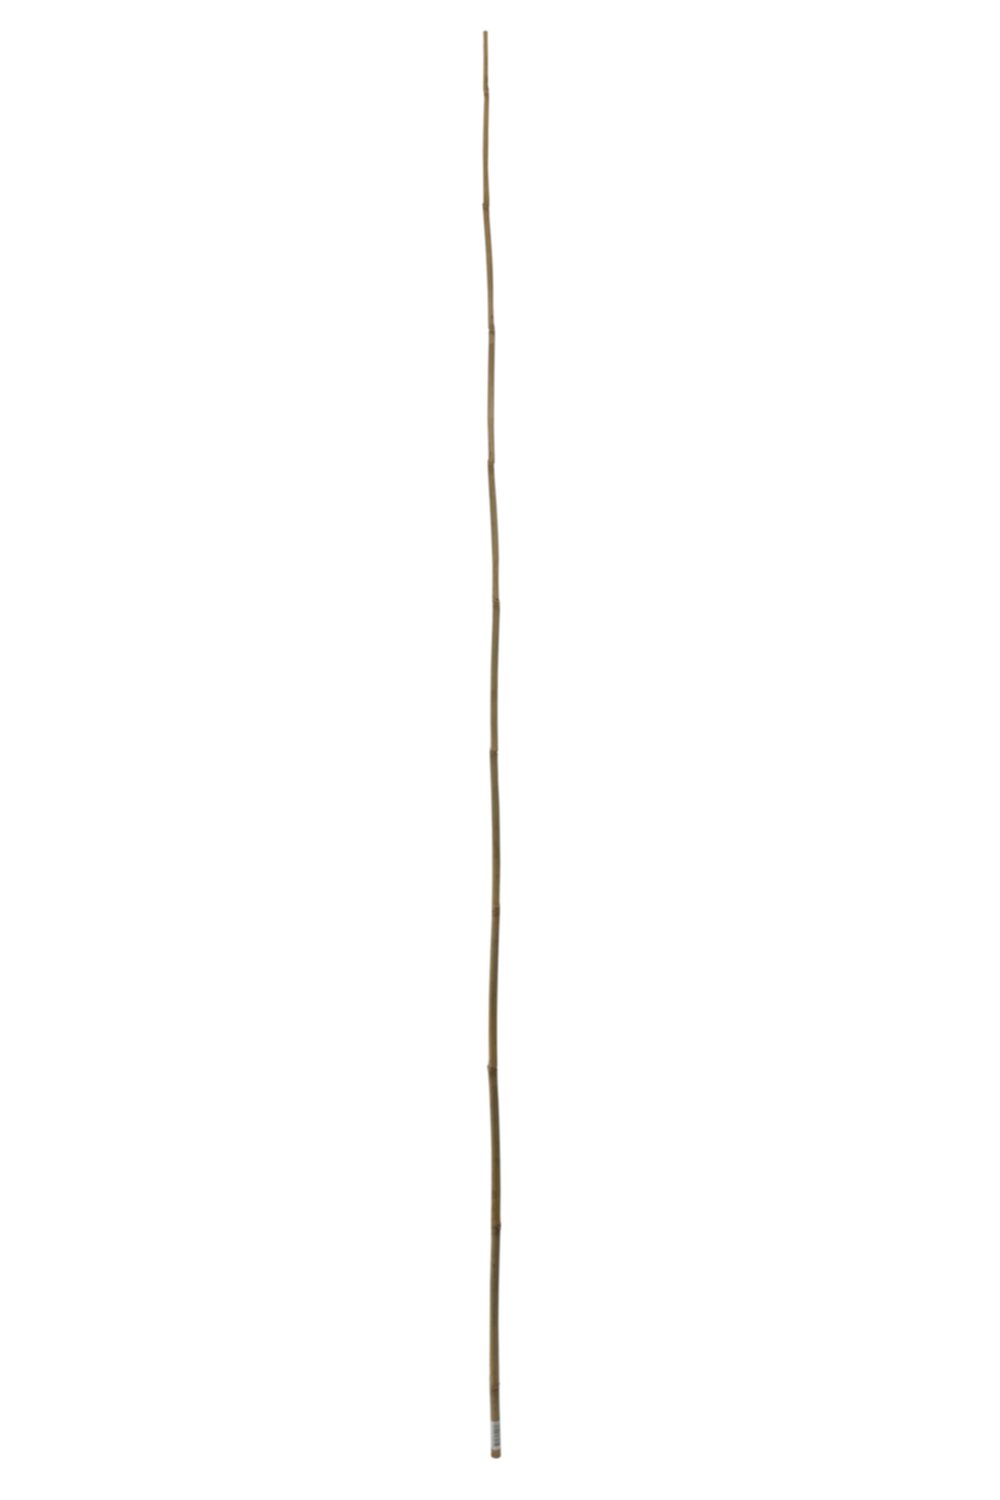 Tuteur bambou 2,1 m - IDEAL GARDEN